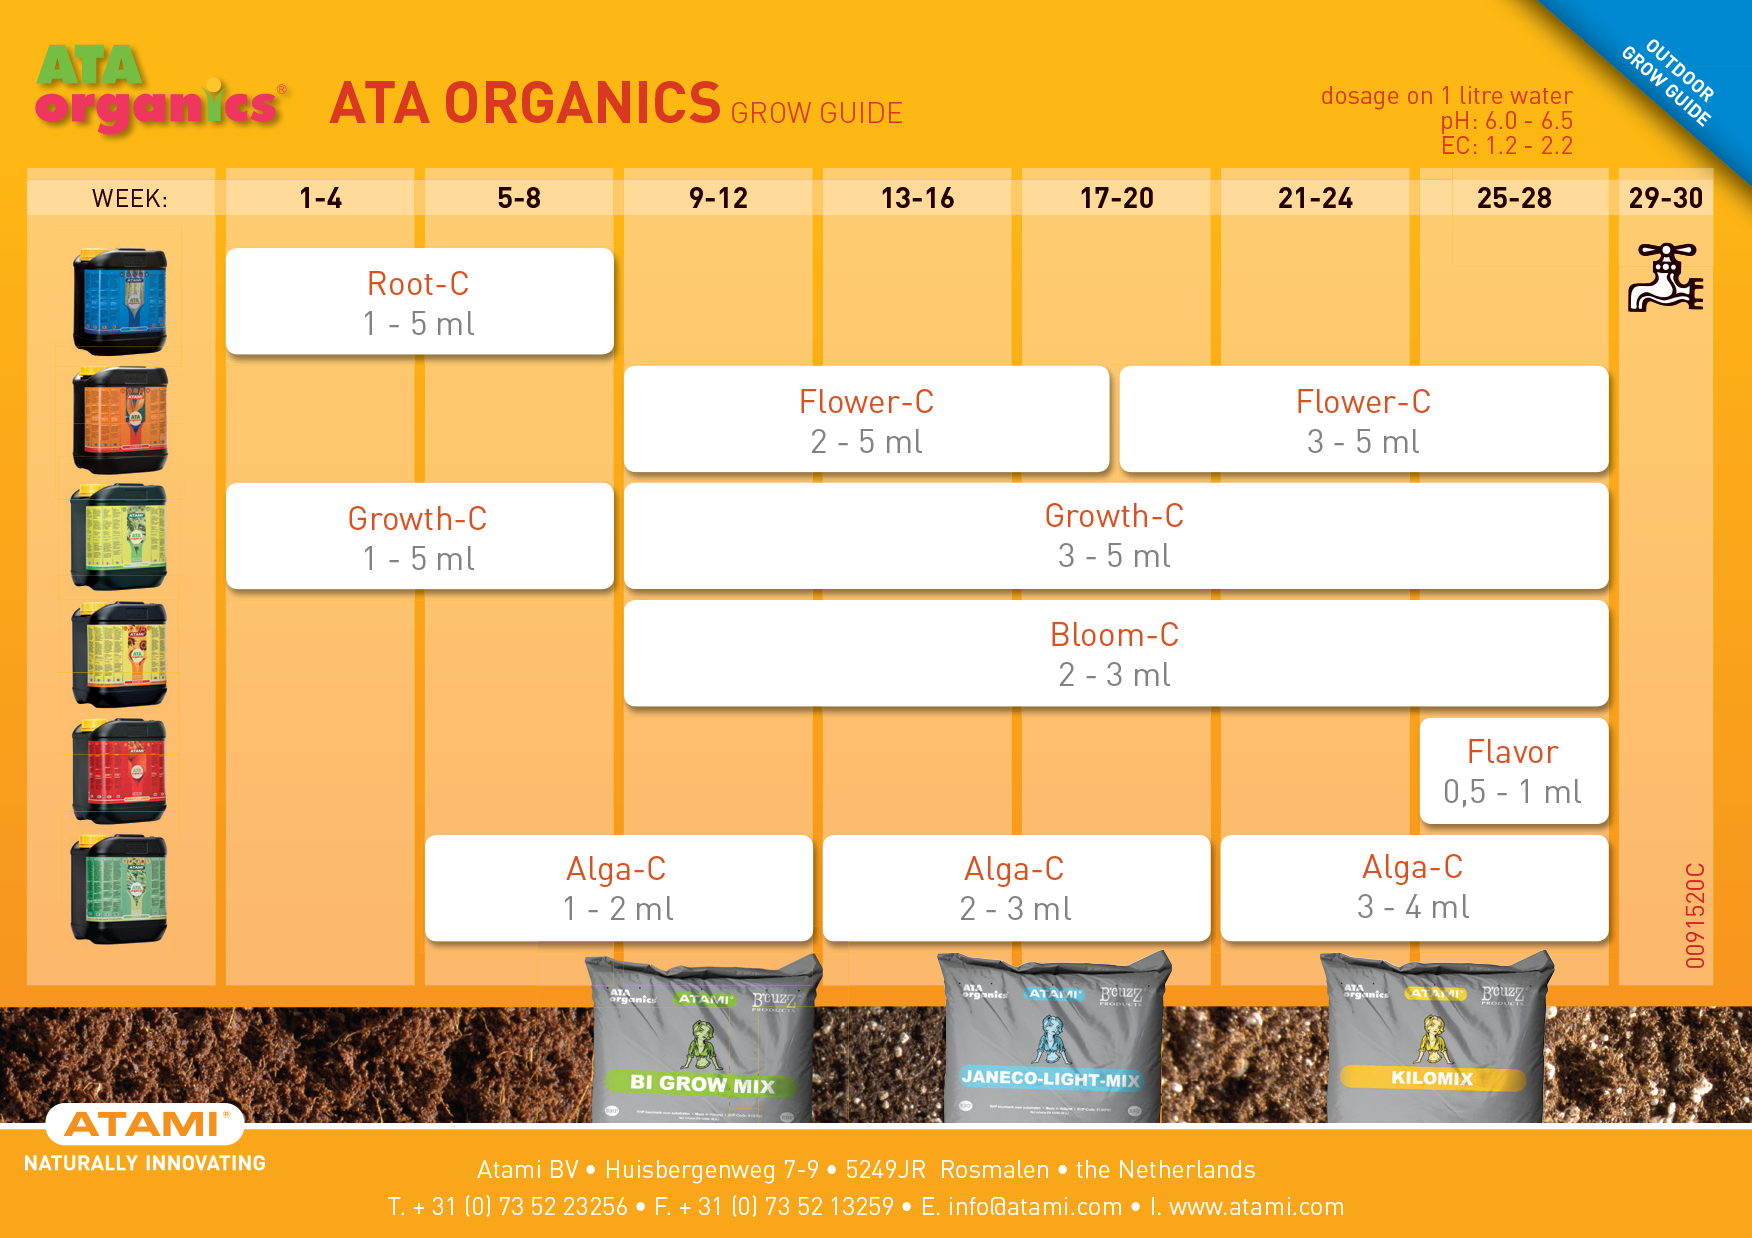 ATA Flavor (органическая добавка для улучшения вкуса урожая)